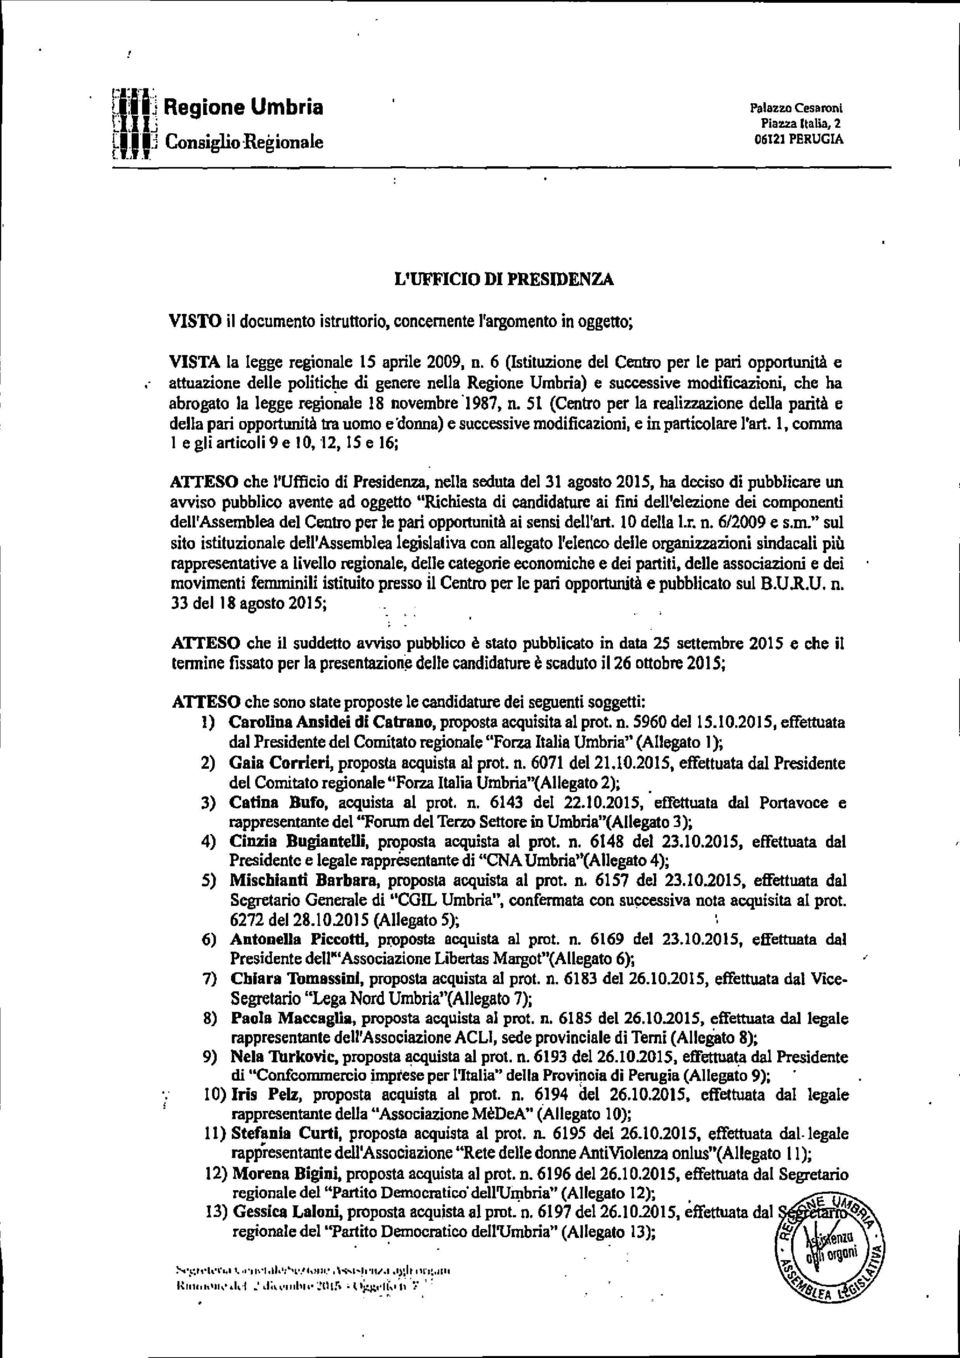 6 (Istituzione del Centro per le pari opportunità e attuazione delle politiche di genere nella Regione Umbria) e successive modificazioni, che ha abrogato la legge regionale 18 novembre 1987, n.